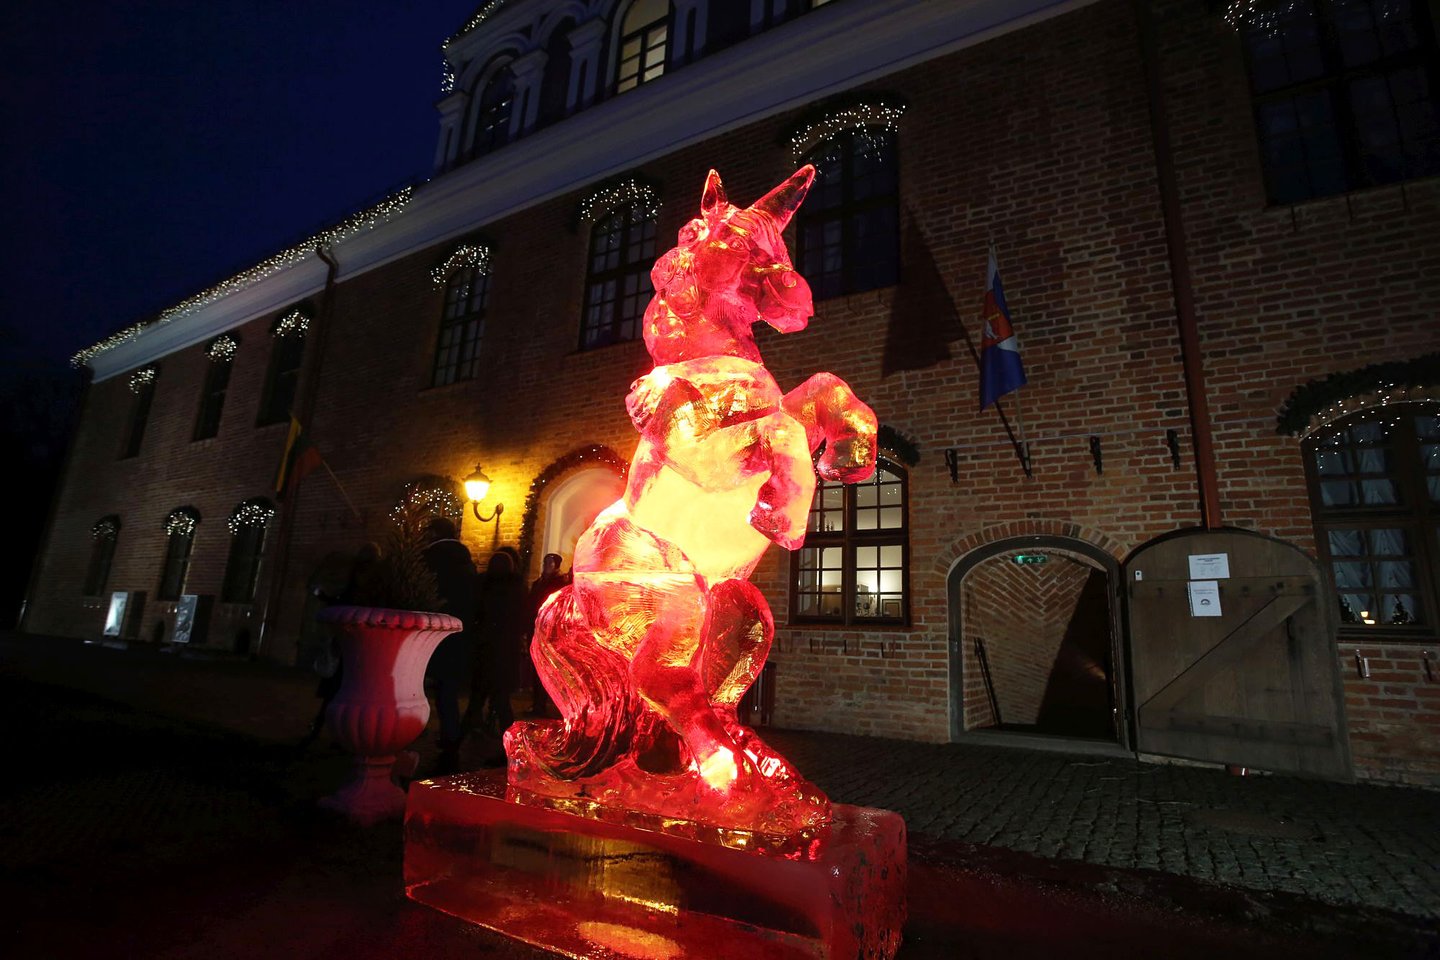 Penktadienio vakarą Raudondvaryje surengta įspūdinga šventė - įžiebta pagrindinė Kauno rajono eglė.<br> M.Patašiaus nuotr.